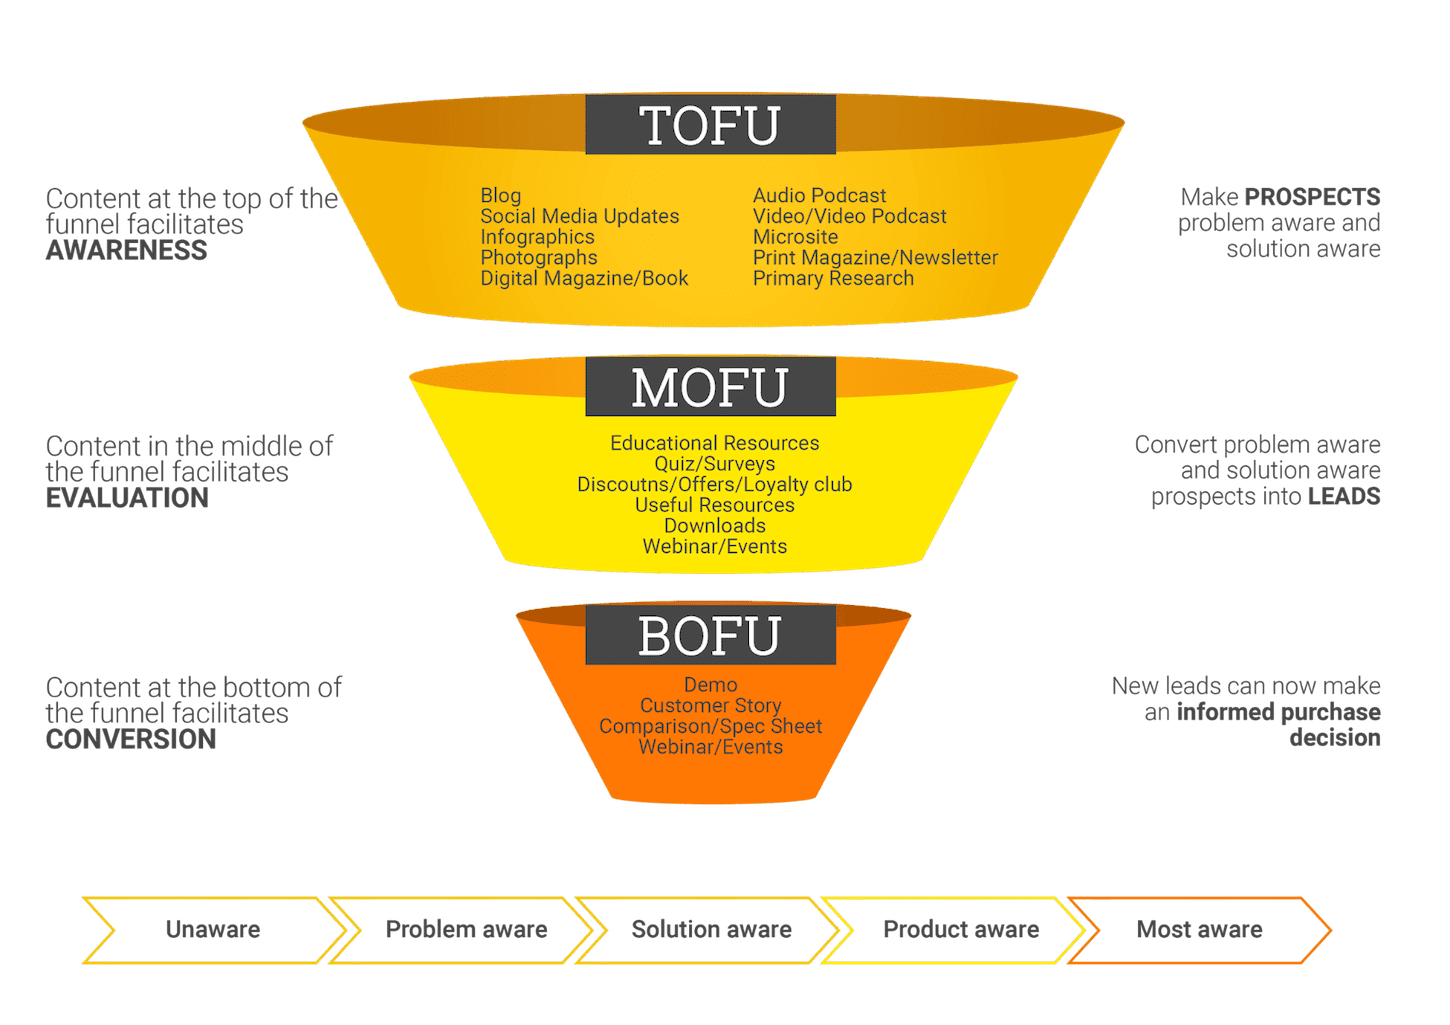 Cara Membangun Content Marketing Funnel yang Mengubah Prospek (Leads) Menjadi Penjualan (Sales)